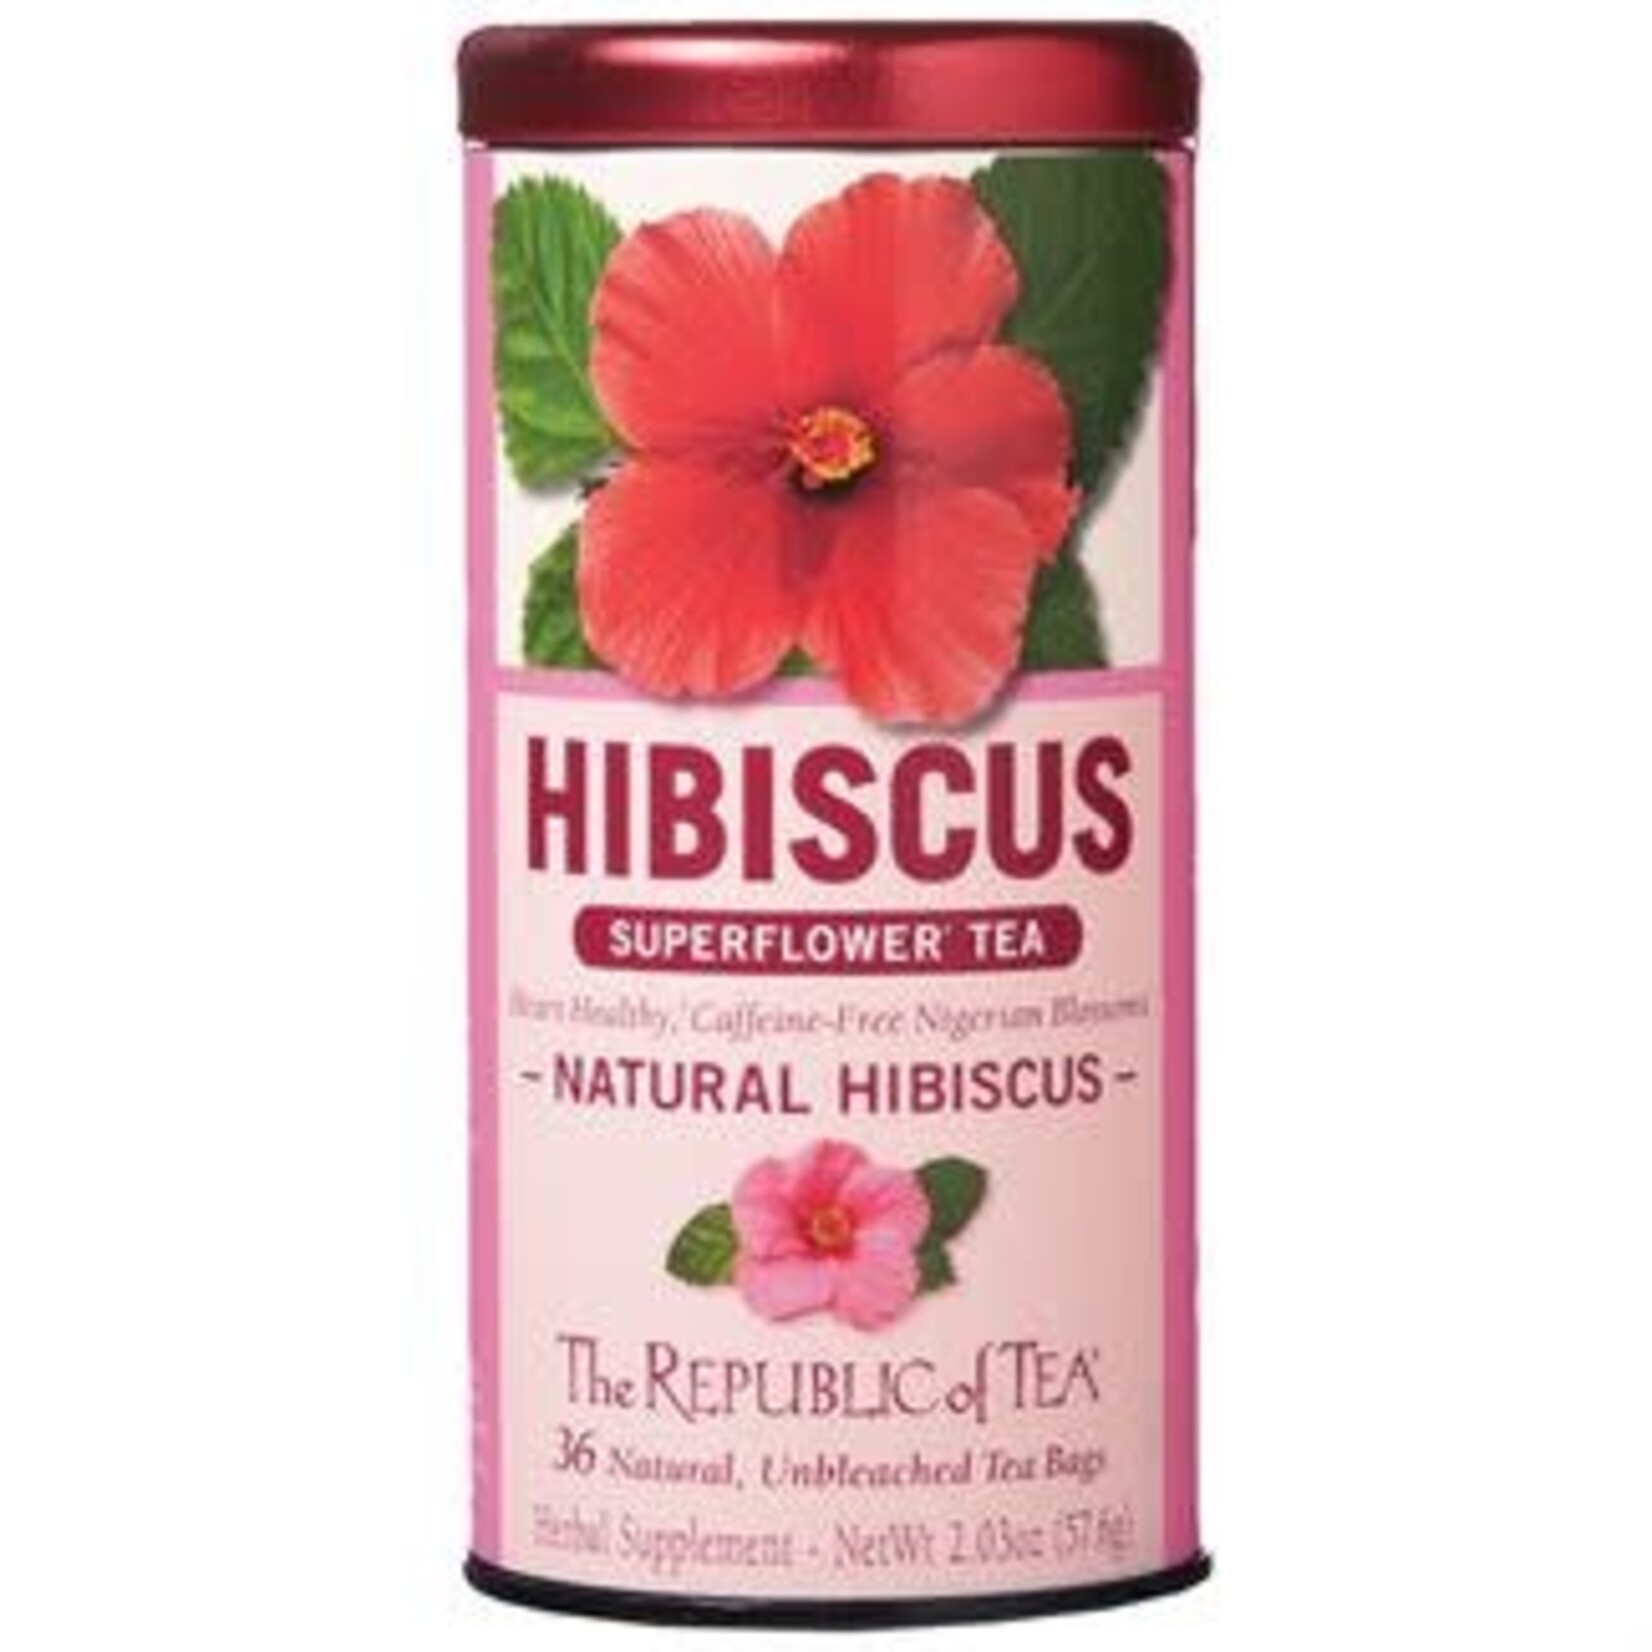 The Republic of Tea Natural Hibiscus Tea, 36 Bag Tin